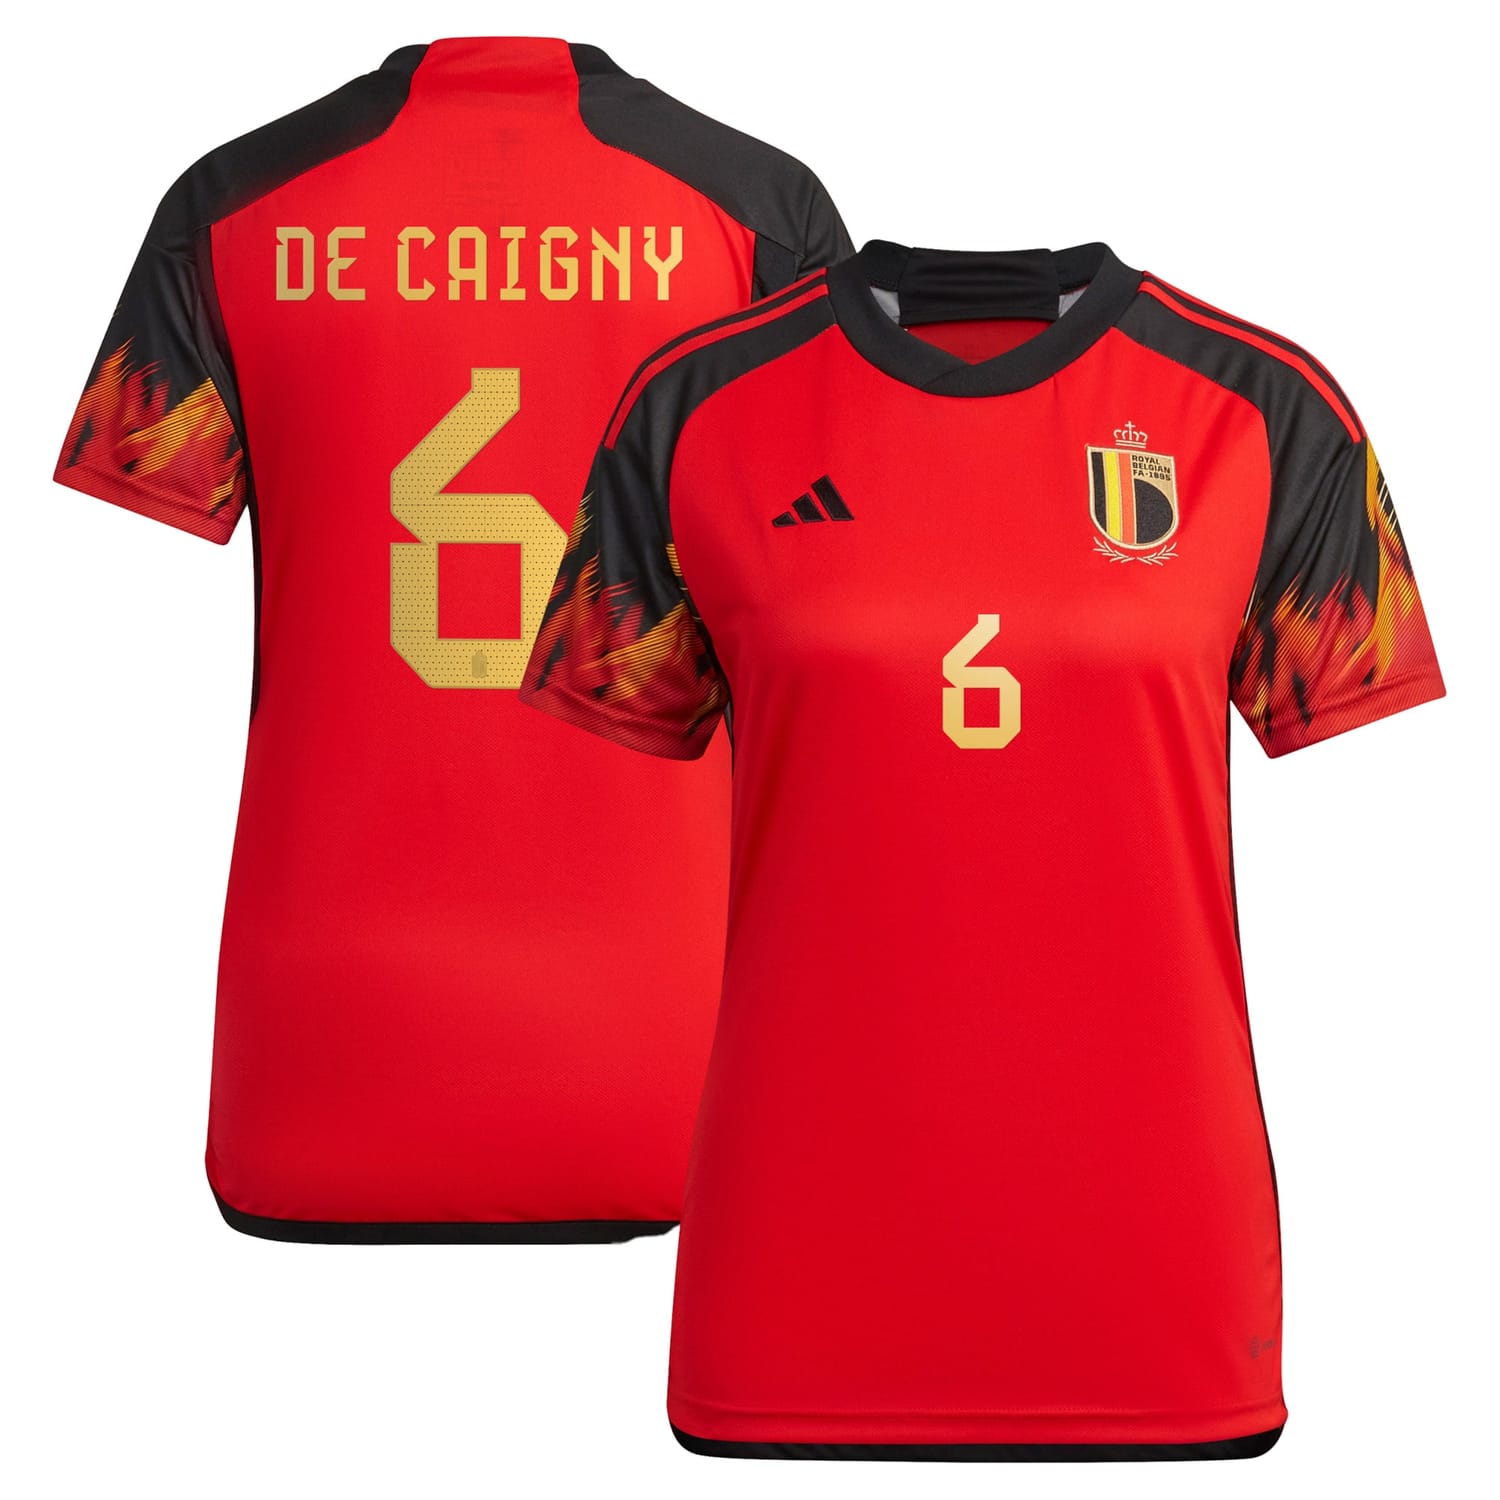 Belgium National Team Home Jersey Shirt 2022 player Tine De Caigny 6 printing for Women